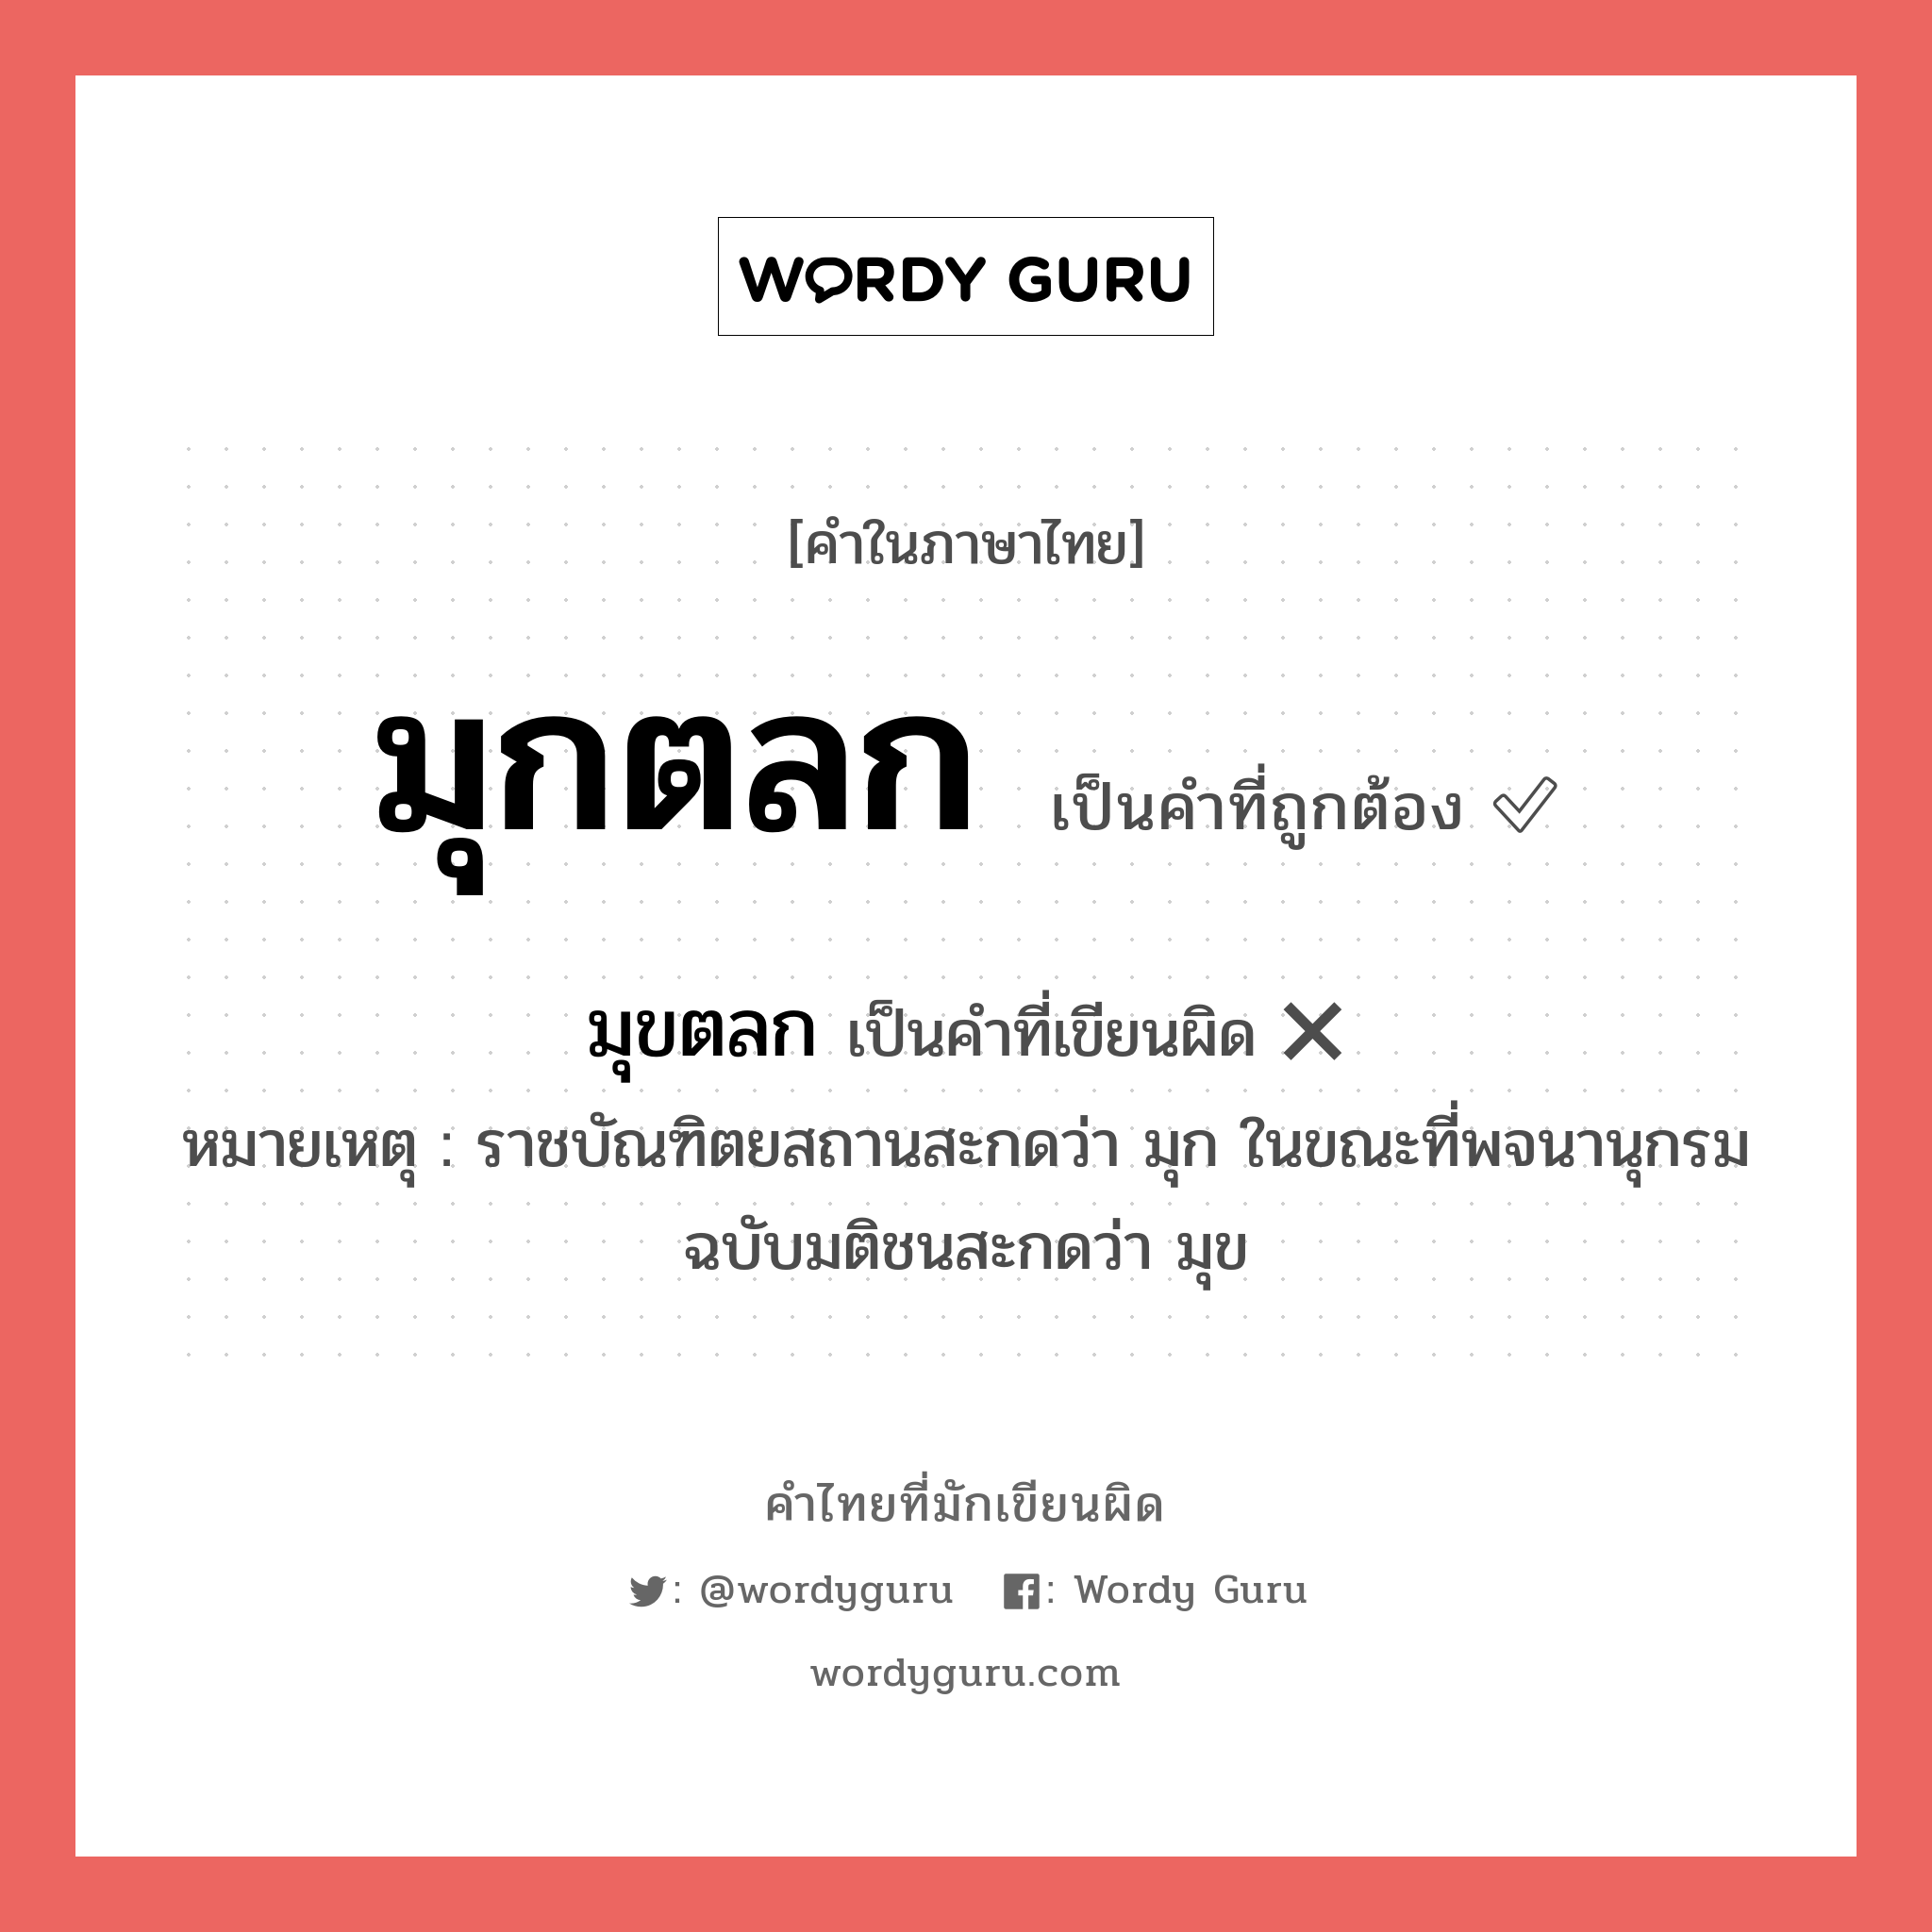 มุกตลก หรือ มุขตลก คำไหนเขียนถูก?, คำในภาษาไทยที่มักเขียนผิด มุกตลก คำที่ผิด ❌ มุขตลก หมายเหตุ ราชบัณฑิตยสถานสะกดว่า มุก ในขณะที่พจนานุกรมฉบับมติชนสะกดว่า มุข